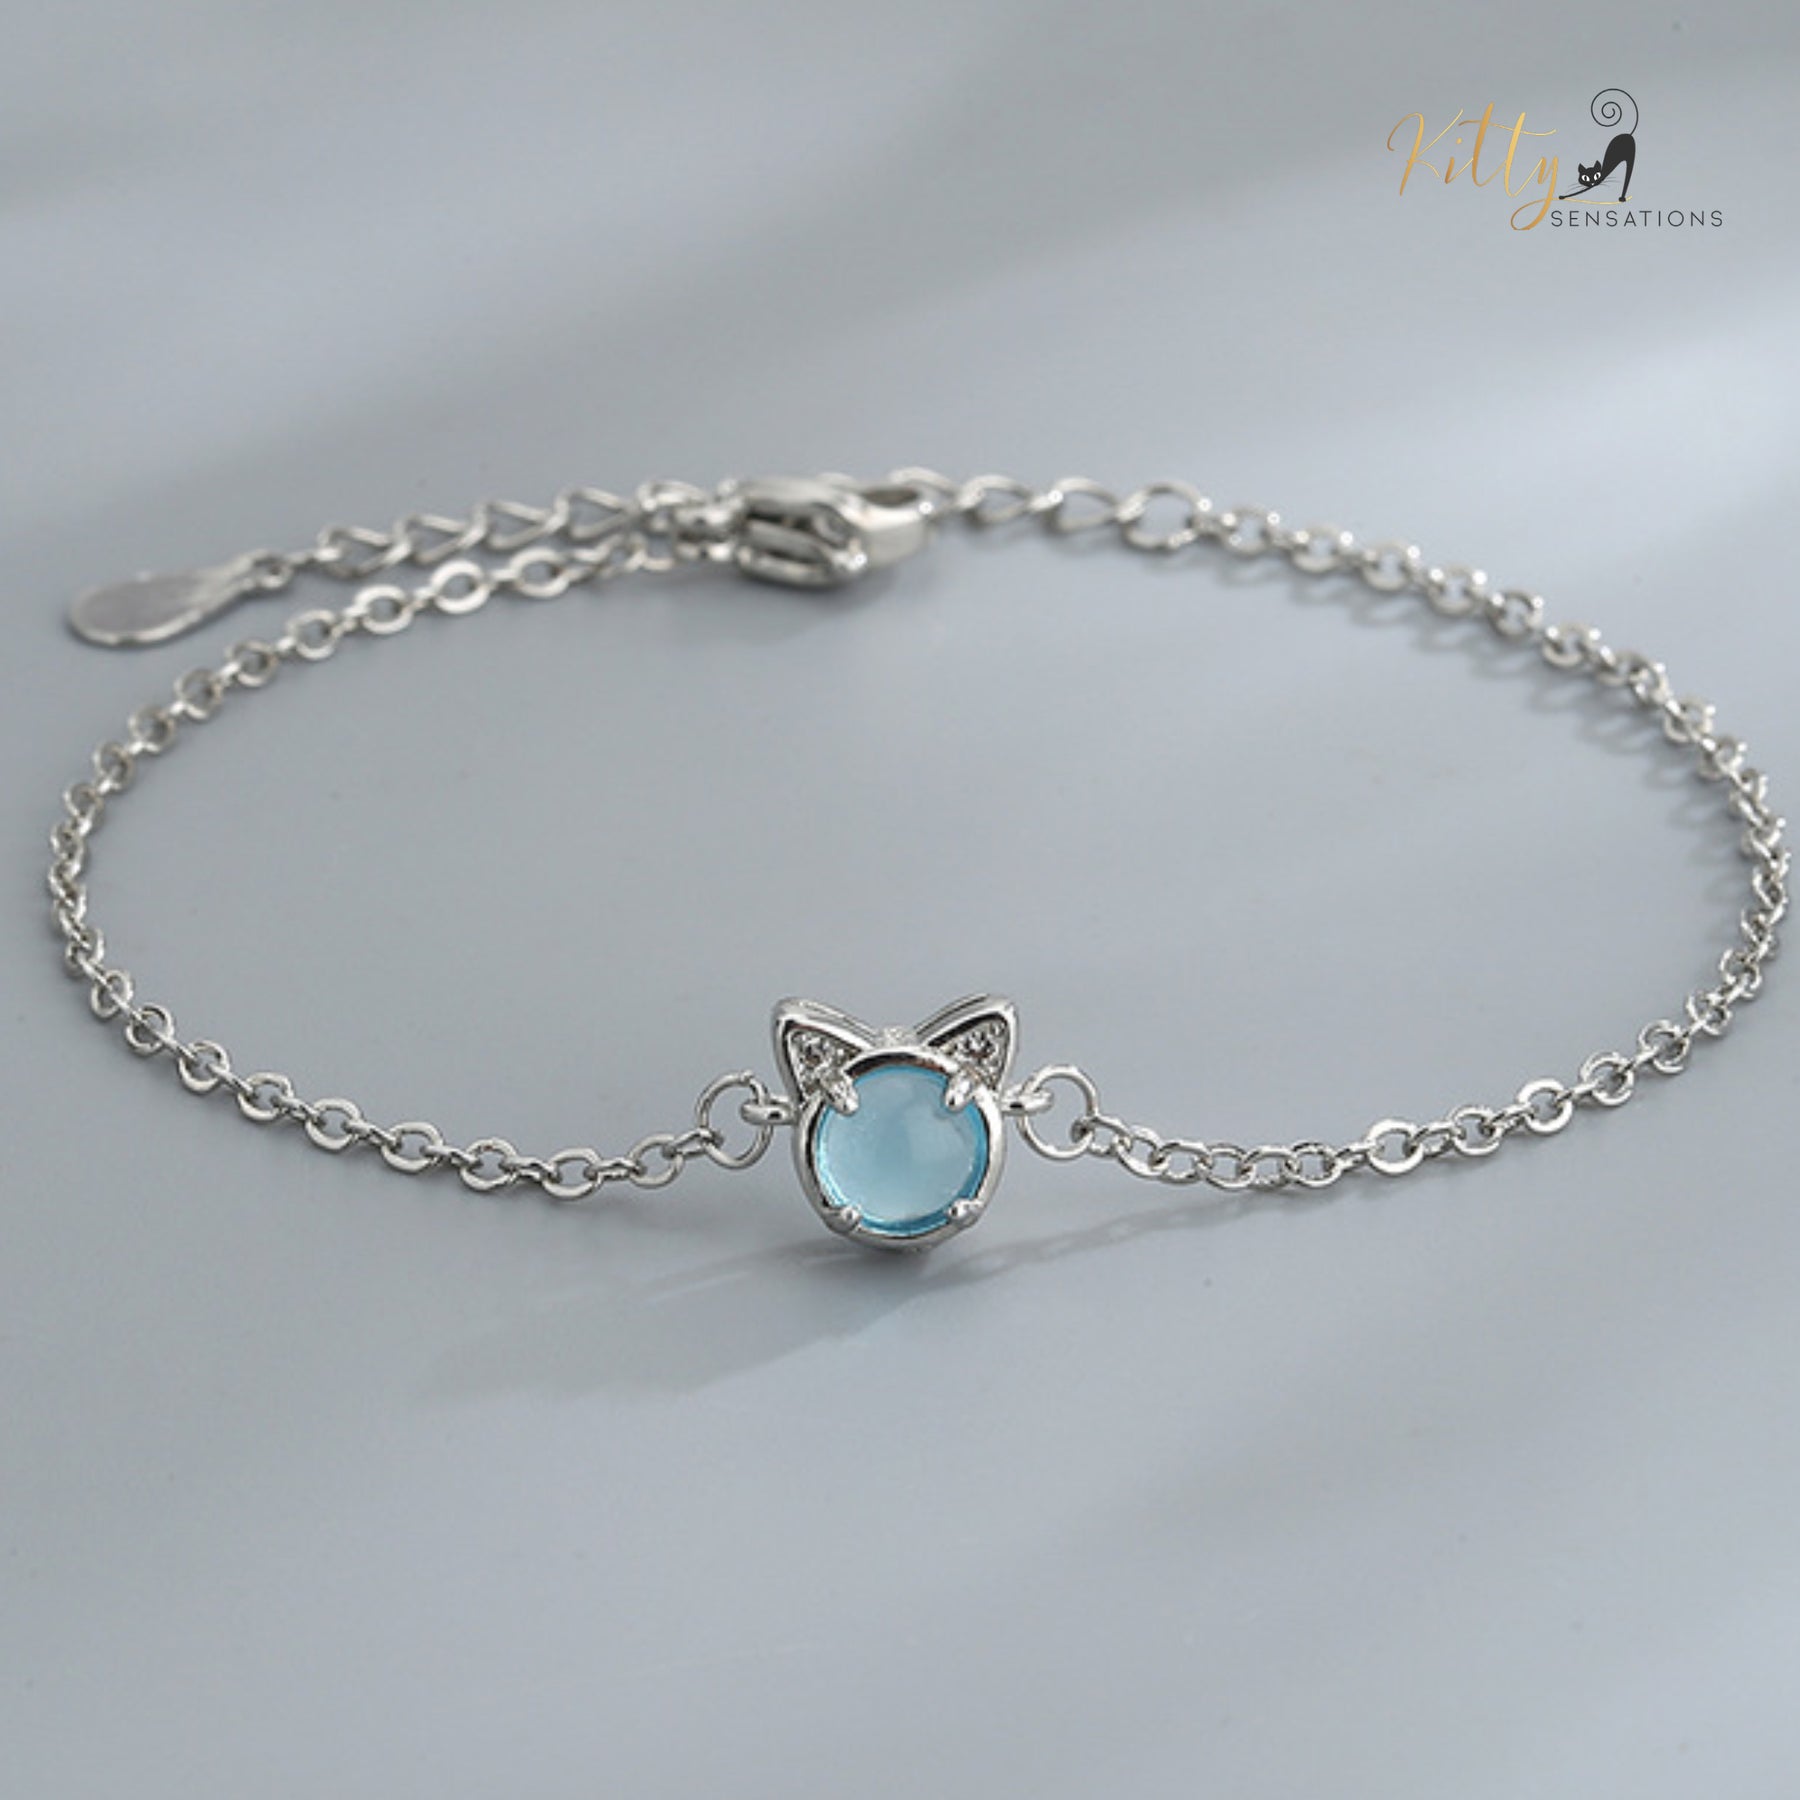 Glacier Crystal Cat Bracelet - Silver Plated - Adjustable